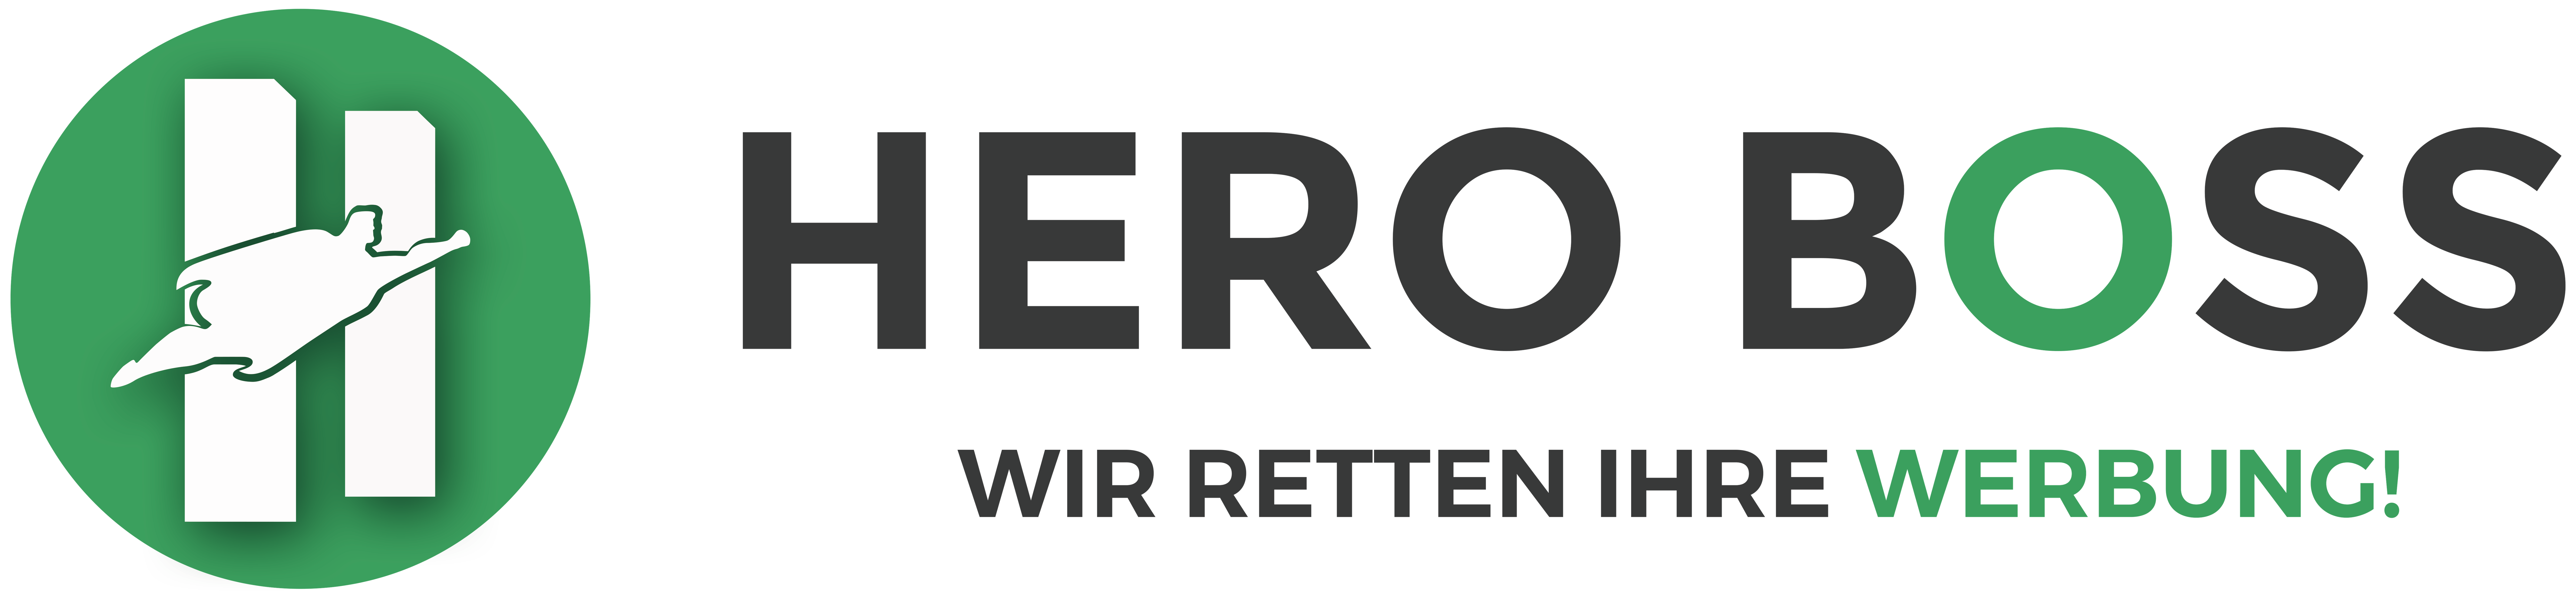 HERO BOSS Werbeagentur & Shop in Köln